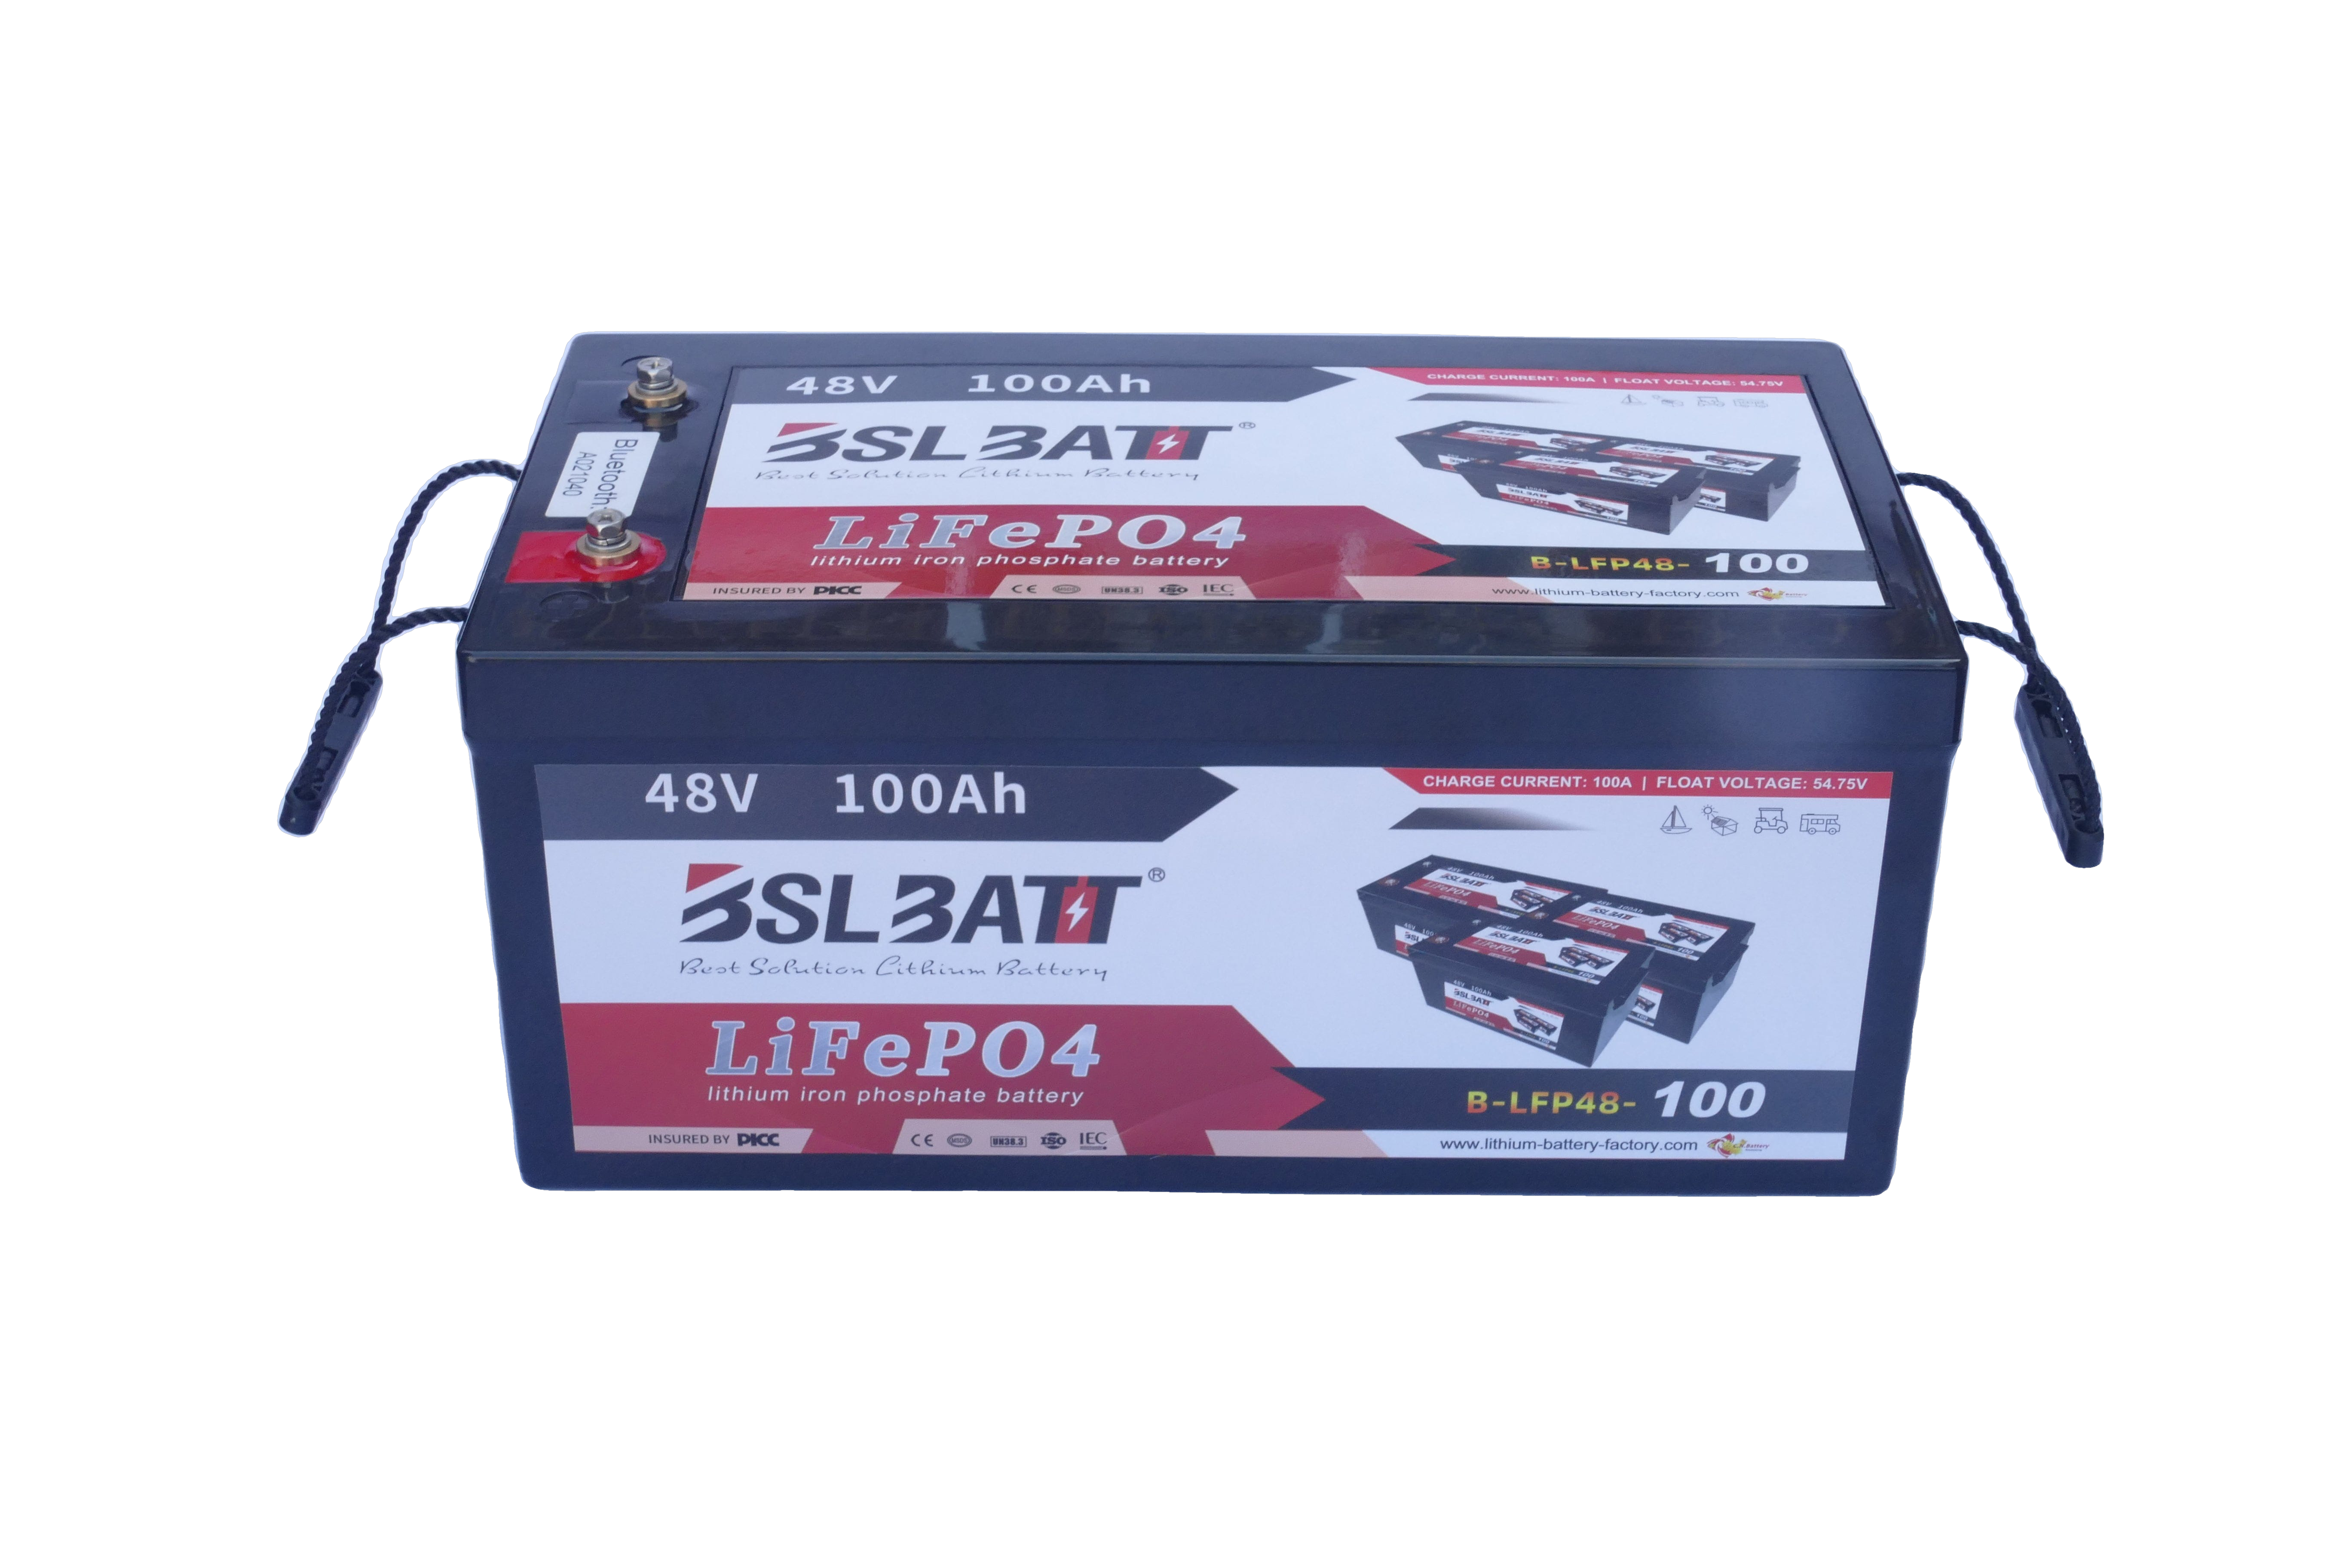 BSLBATT 48V 100AH Lithium Battery (bluetooth) – e-way